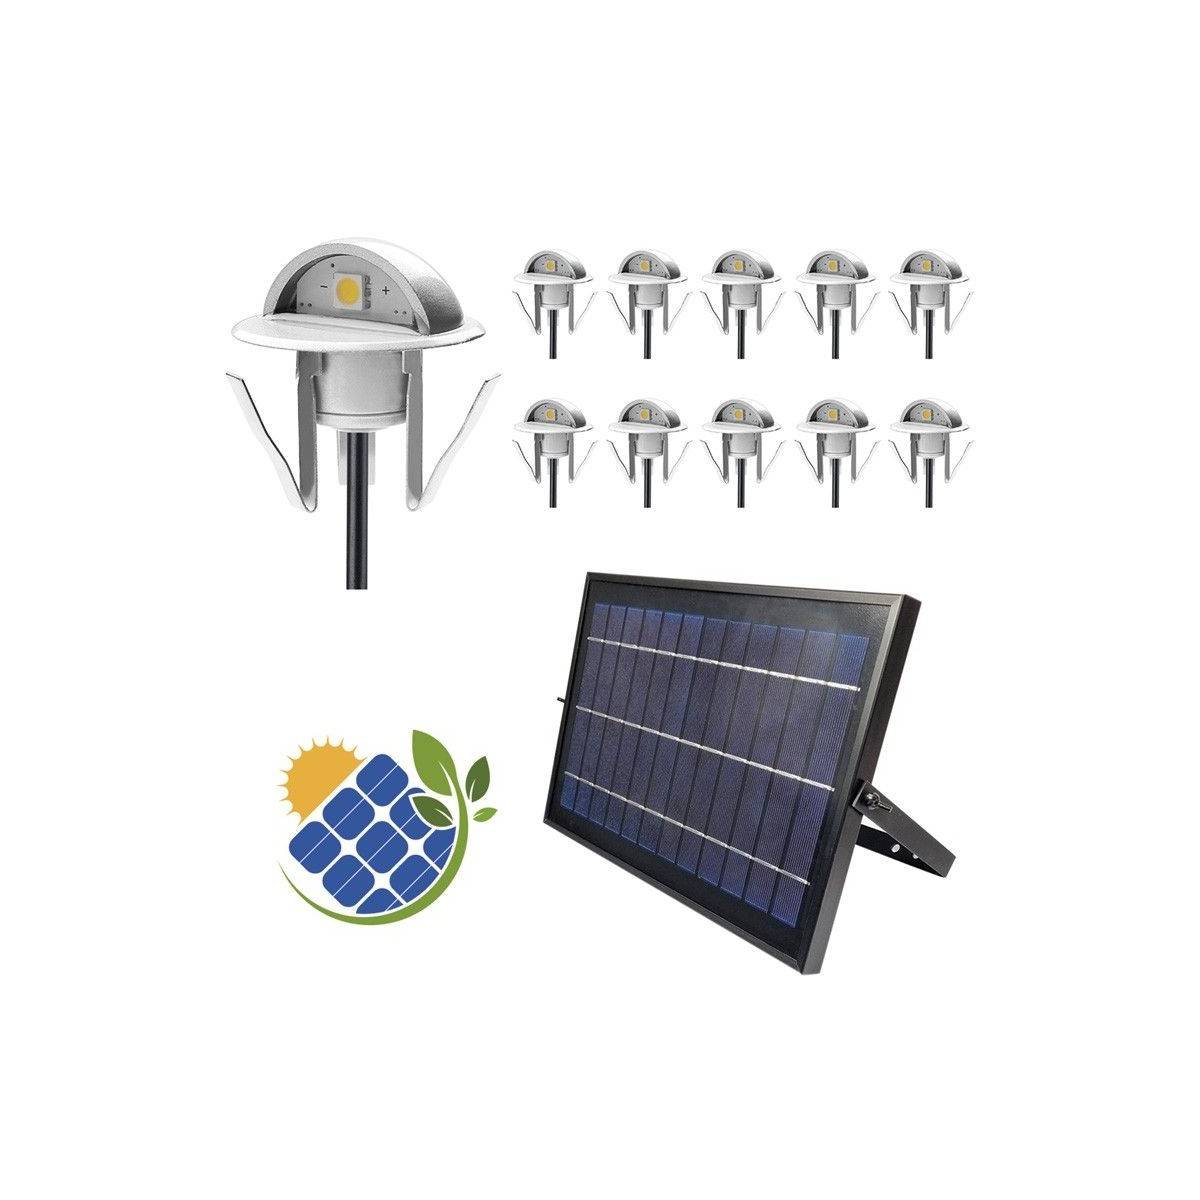 Confezione da 10 faretti solari a LED da incasso con pannello solare